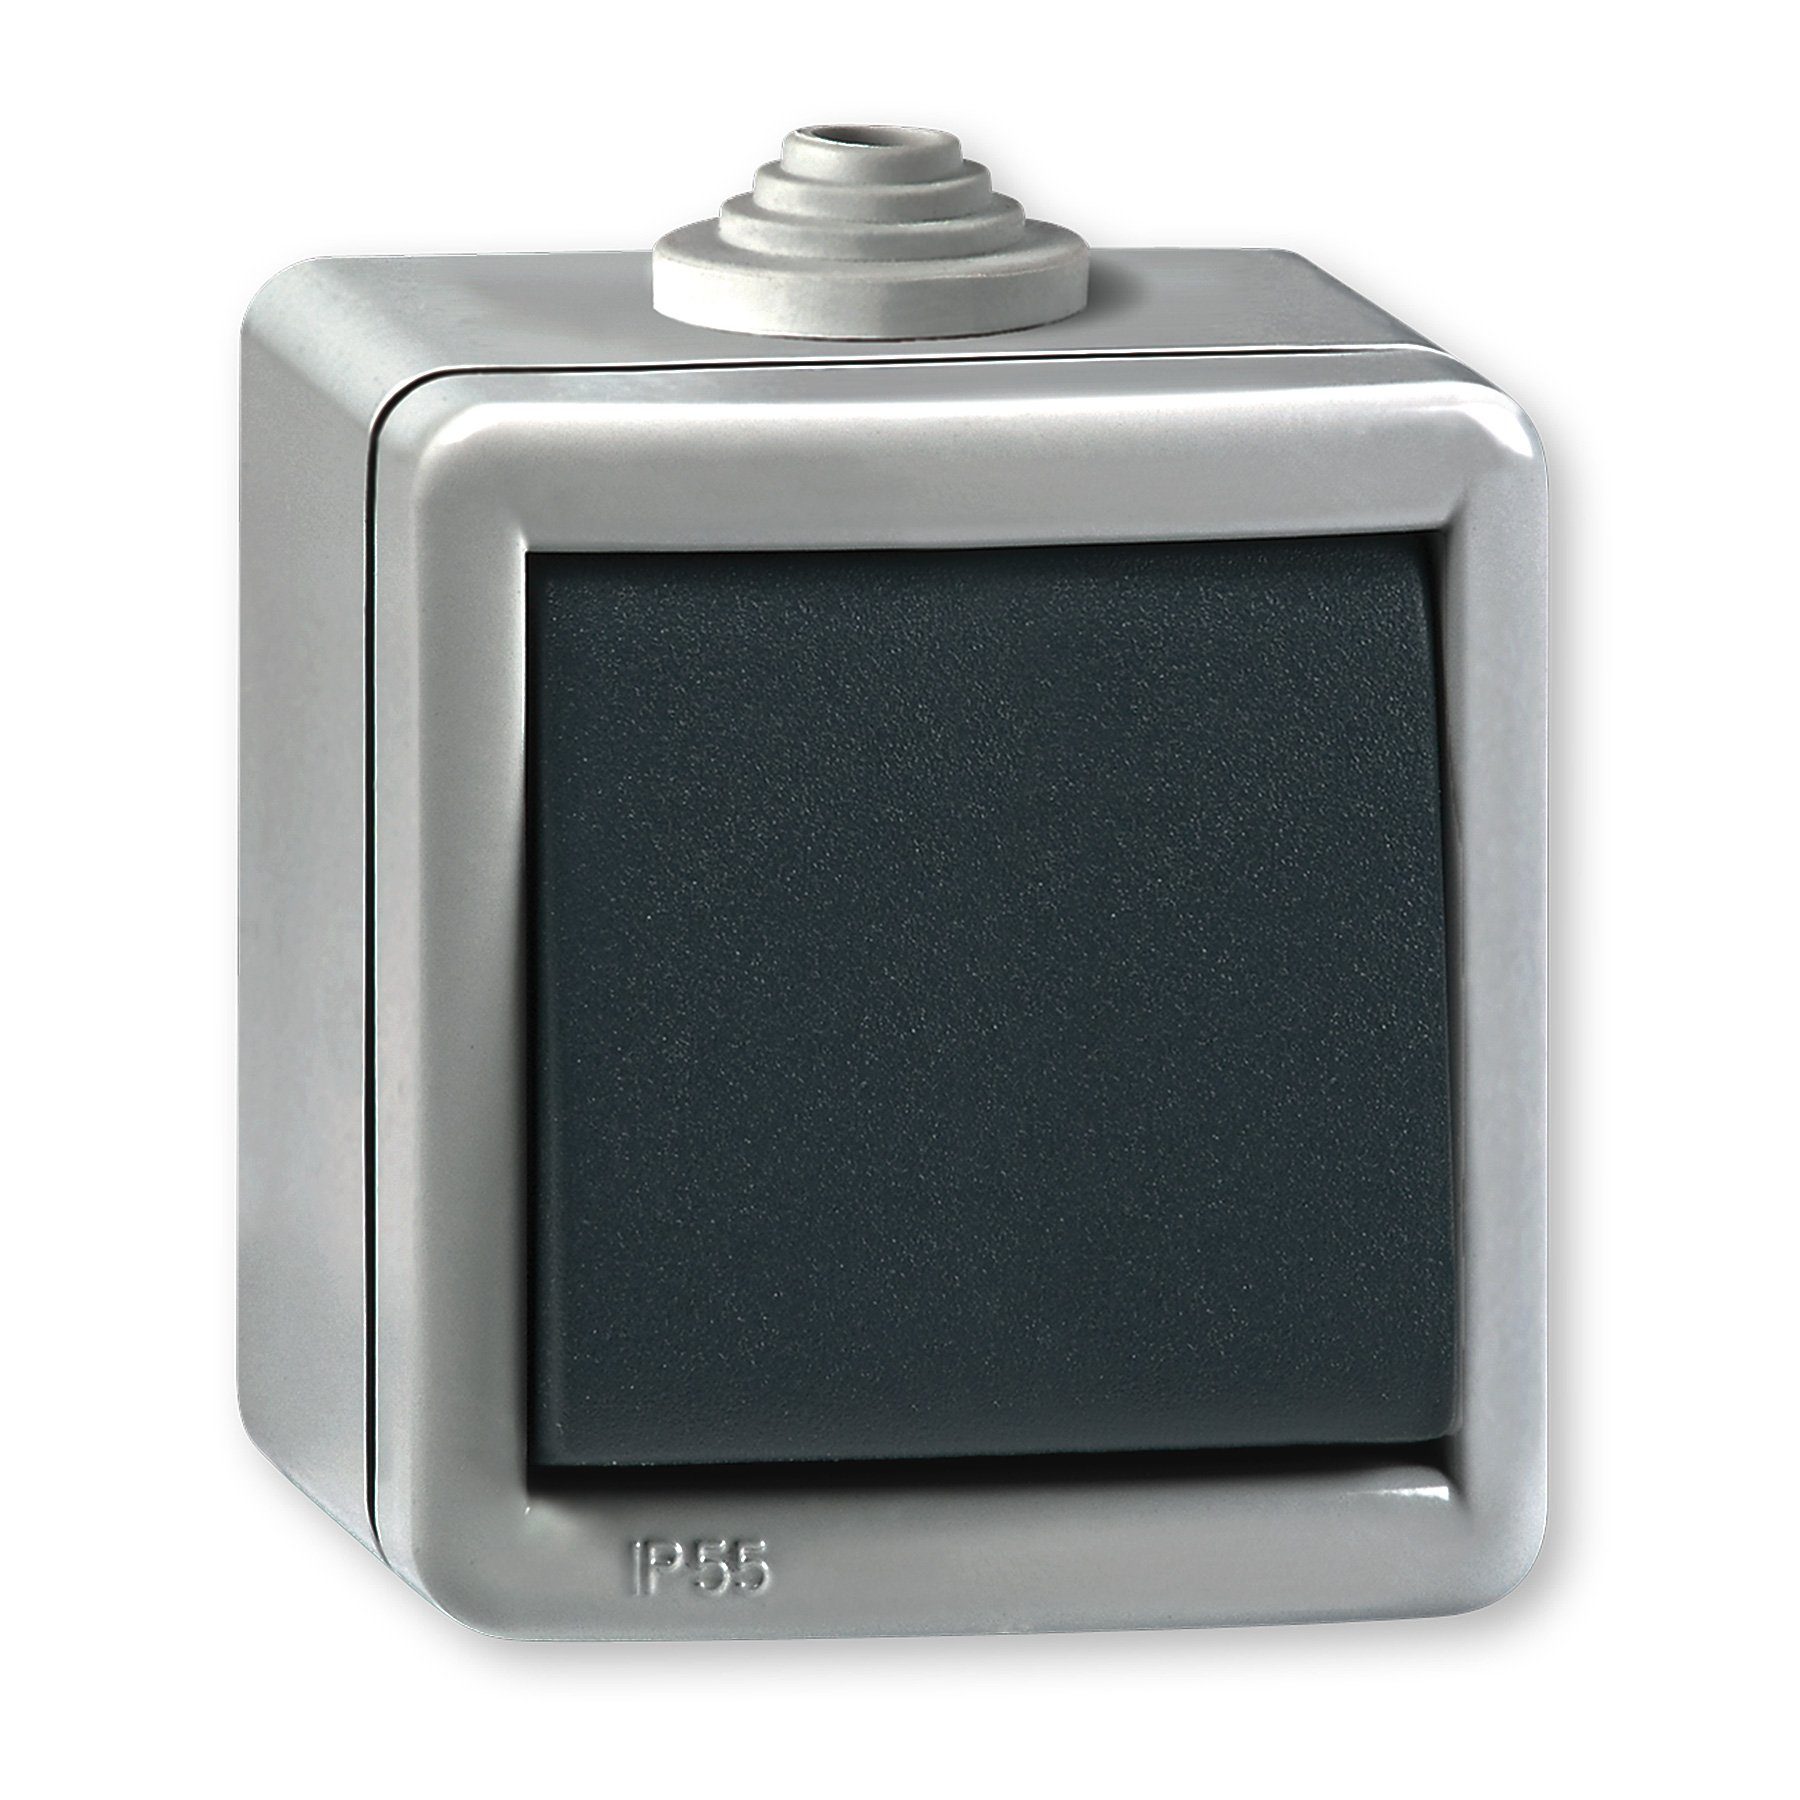 Aling Conel Ein/Aus IP Line Armor Schalter (Packung), Lichtschalter Aufputz 55